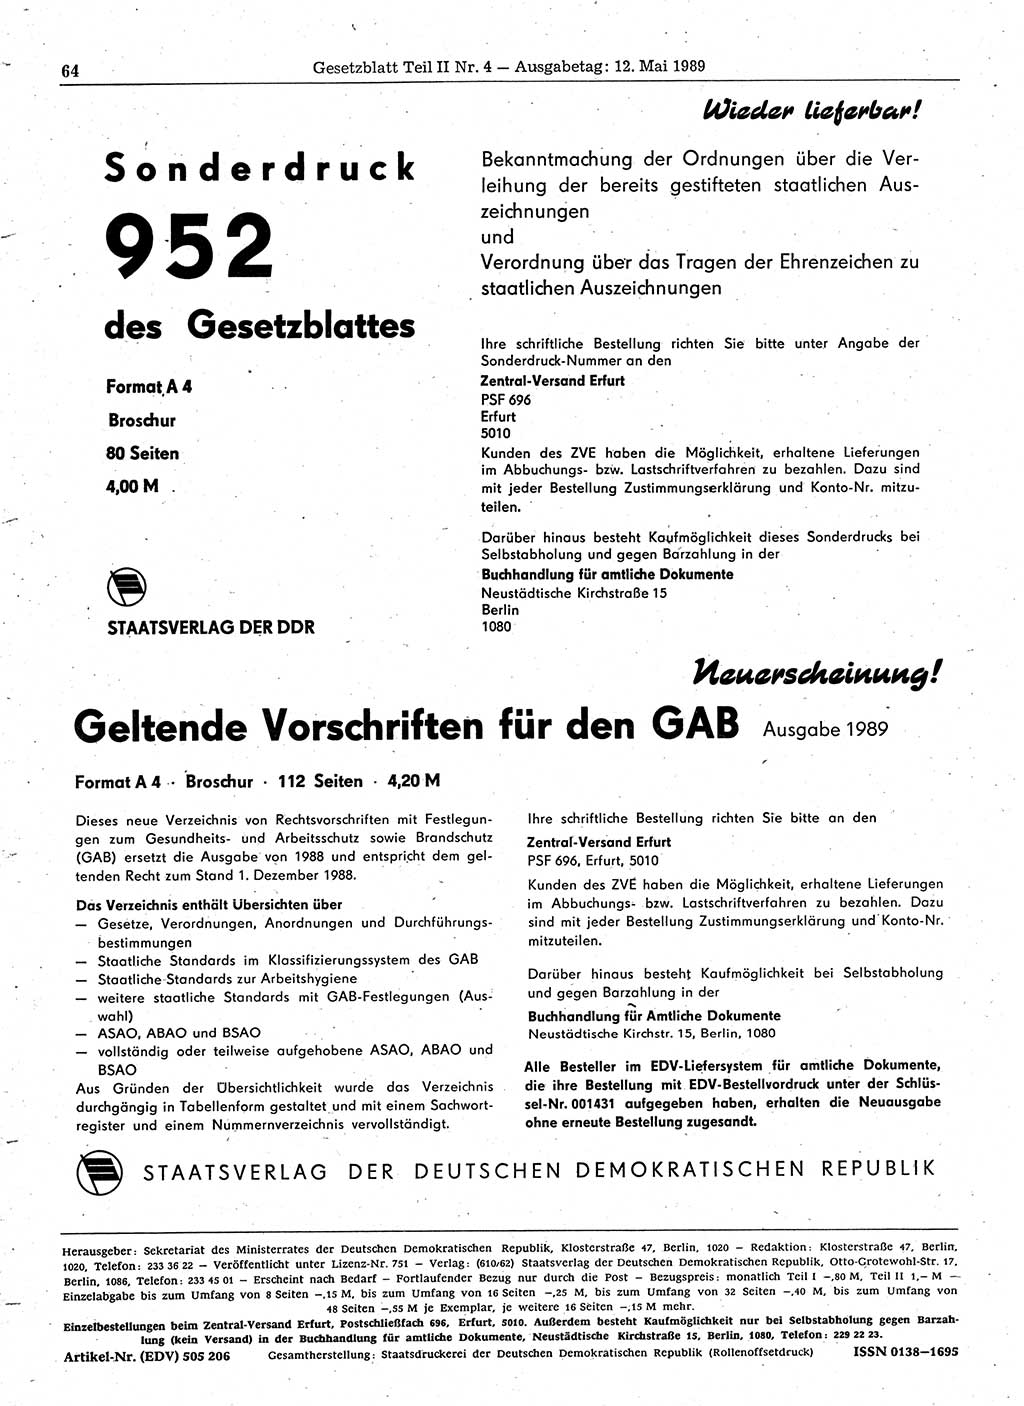 Gesetzblatt (GBl.) der Deutschen Demokratischen Republik (DDR) Teil ⅠⅠ 1989, Seite 64 (GBl. DDR ⅠⅠ 1989, S. 64)